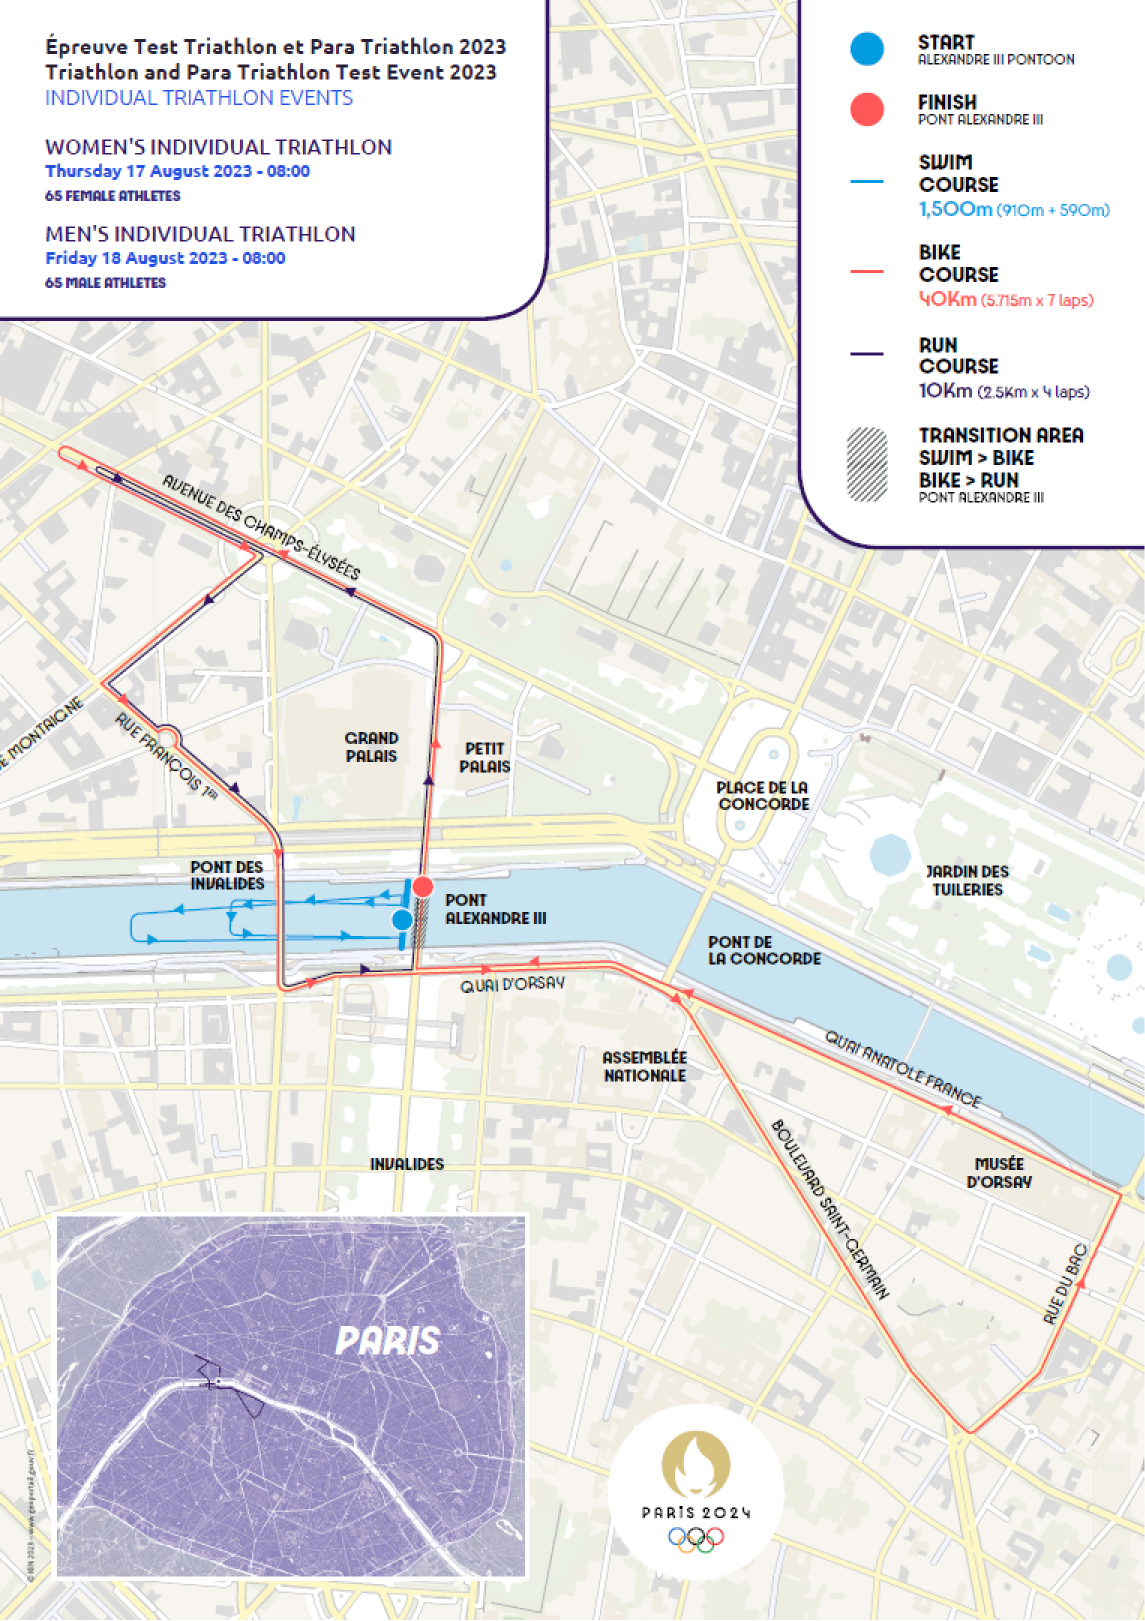 Paris 2024 - Triathlon and Para Triathlon Test Event